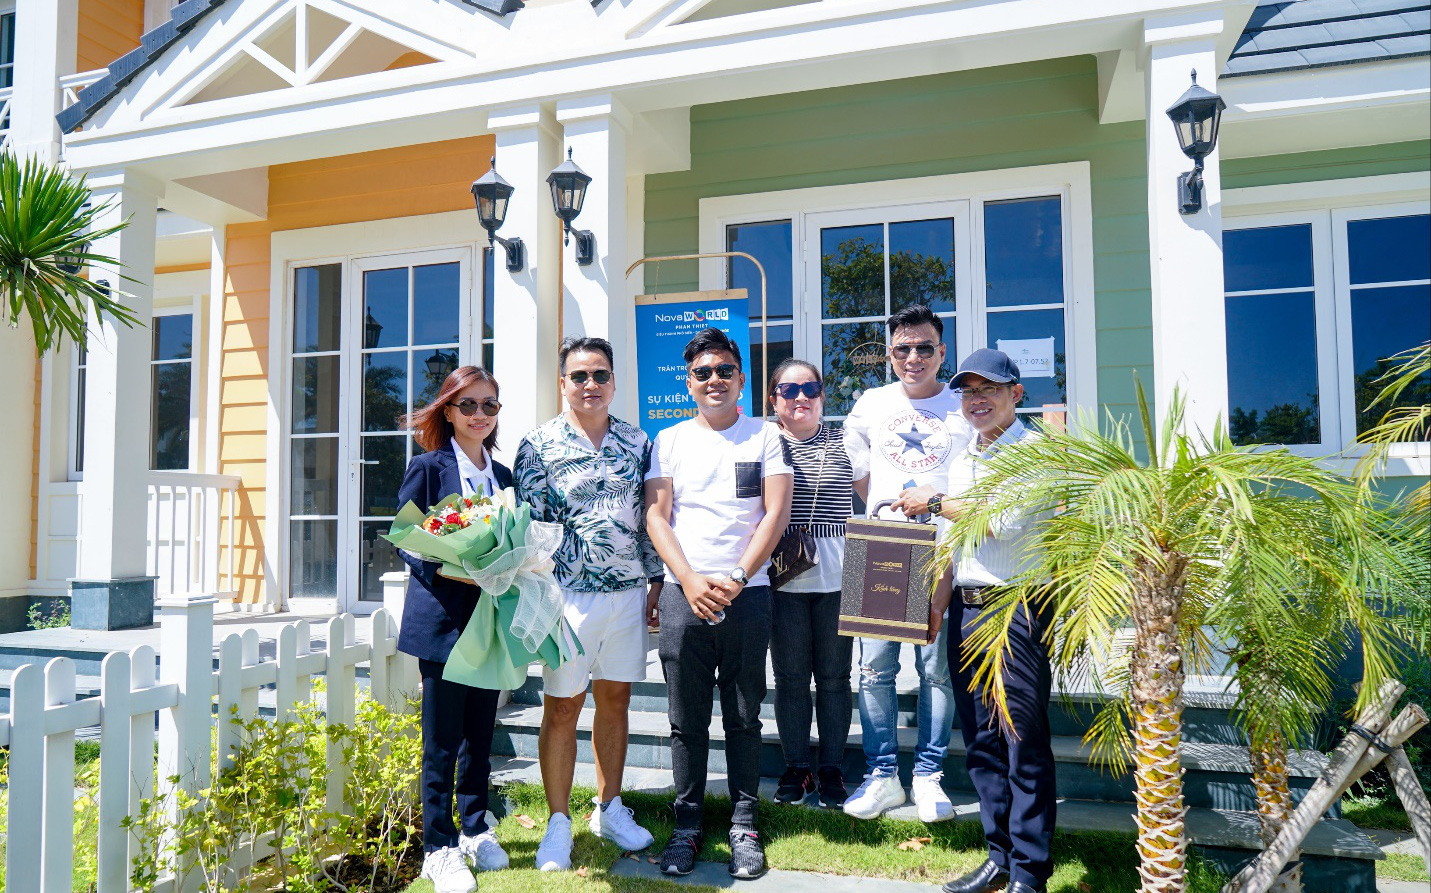 Chủ nhân của biệt thự Florida tại NovaWorld Phan Thiet choáng ngợp khi nhận nhà